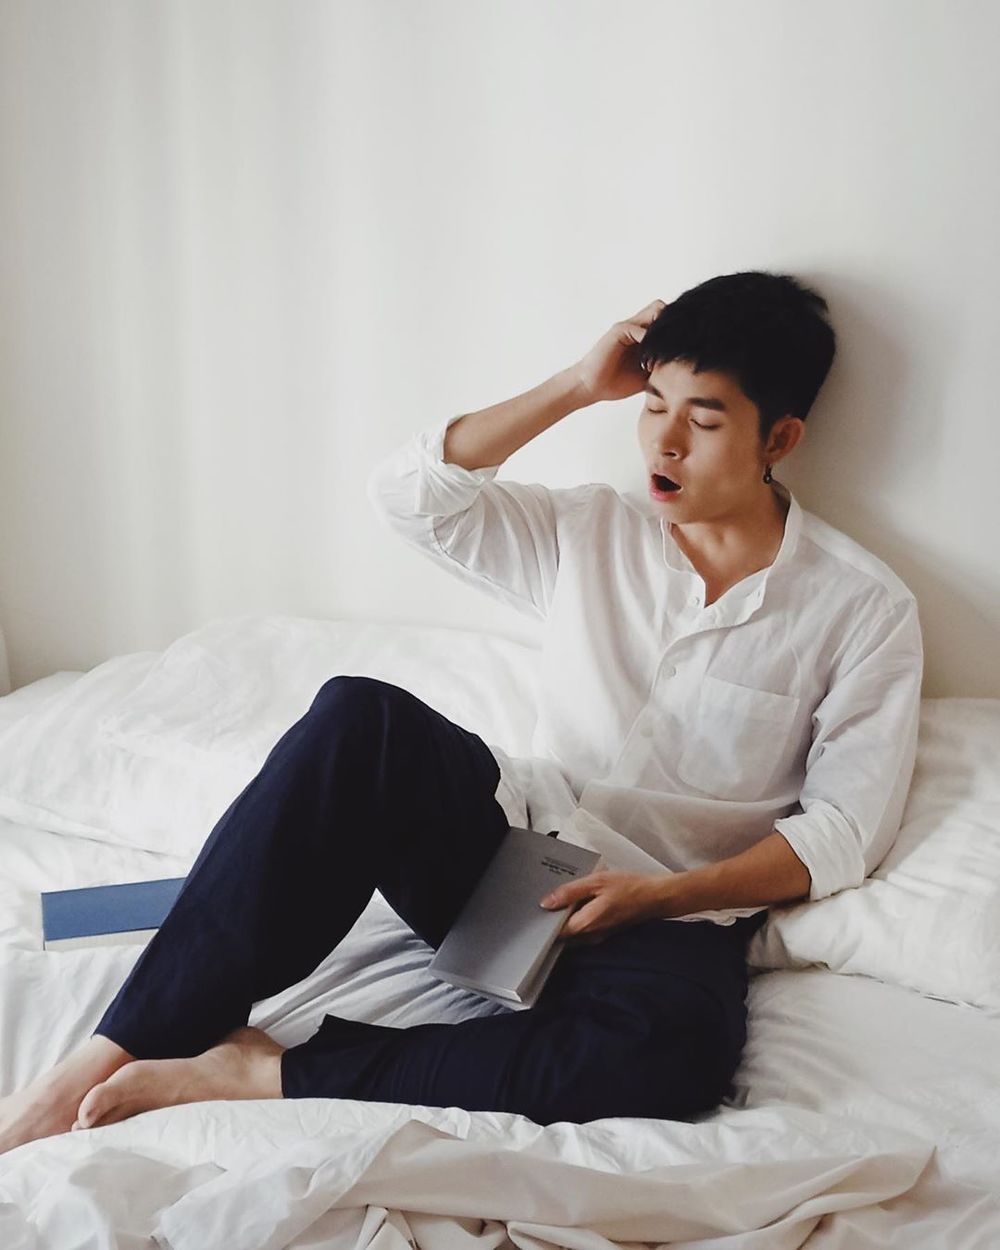  
Jun Phạm đơn giản với sơ mi trắng, quần tây khi ở nhà cũng đủ khiến fan nữ "đổ gục". (Ảnh: Instagram nhân vật)